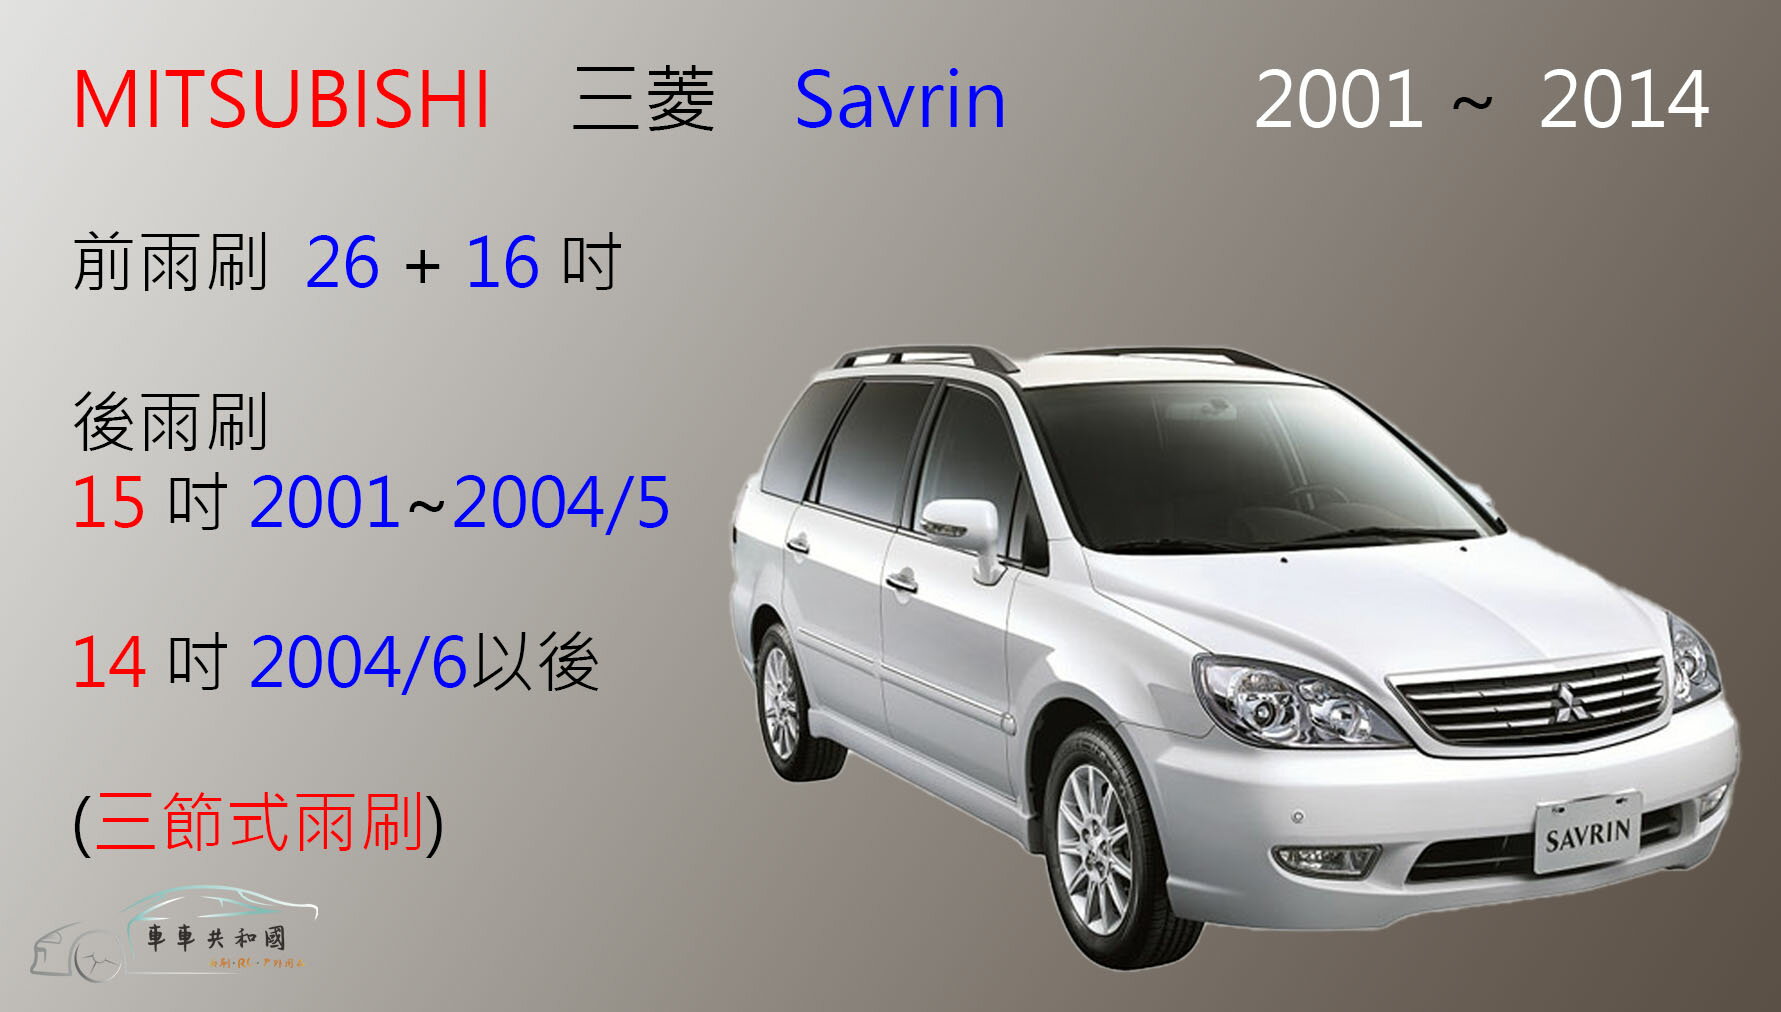 【車車共和國】MITSUBISHI 三菱 Savrin 三節式雨刷 後雨刷 雨刷膠條 可換膠條雨刷 雨刷錠